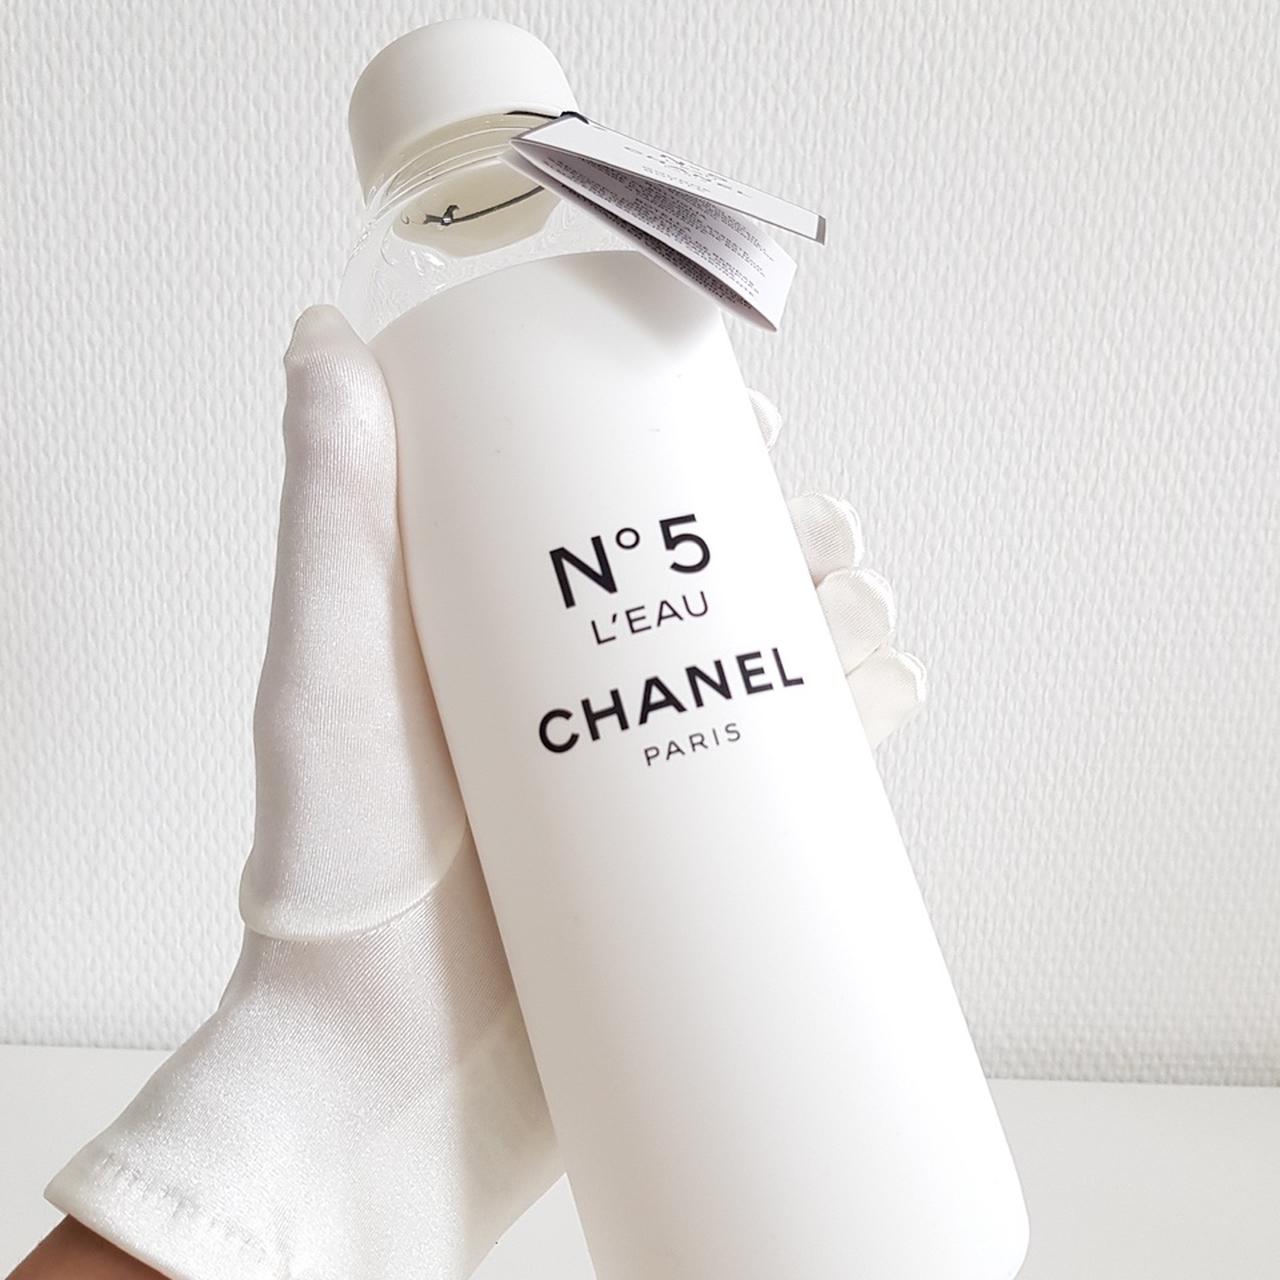 Chanel N°5 Grand Extrait Crystal Fragrance - nitrolicious.com